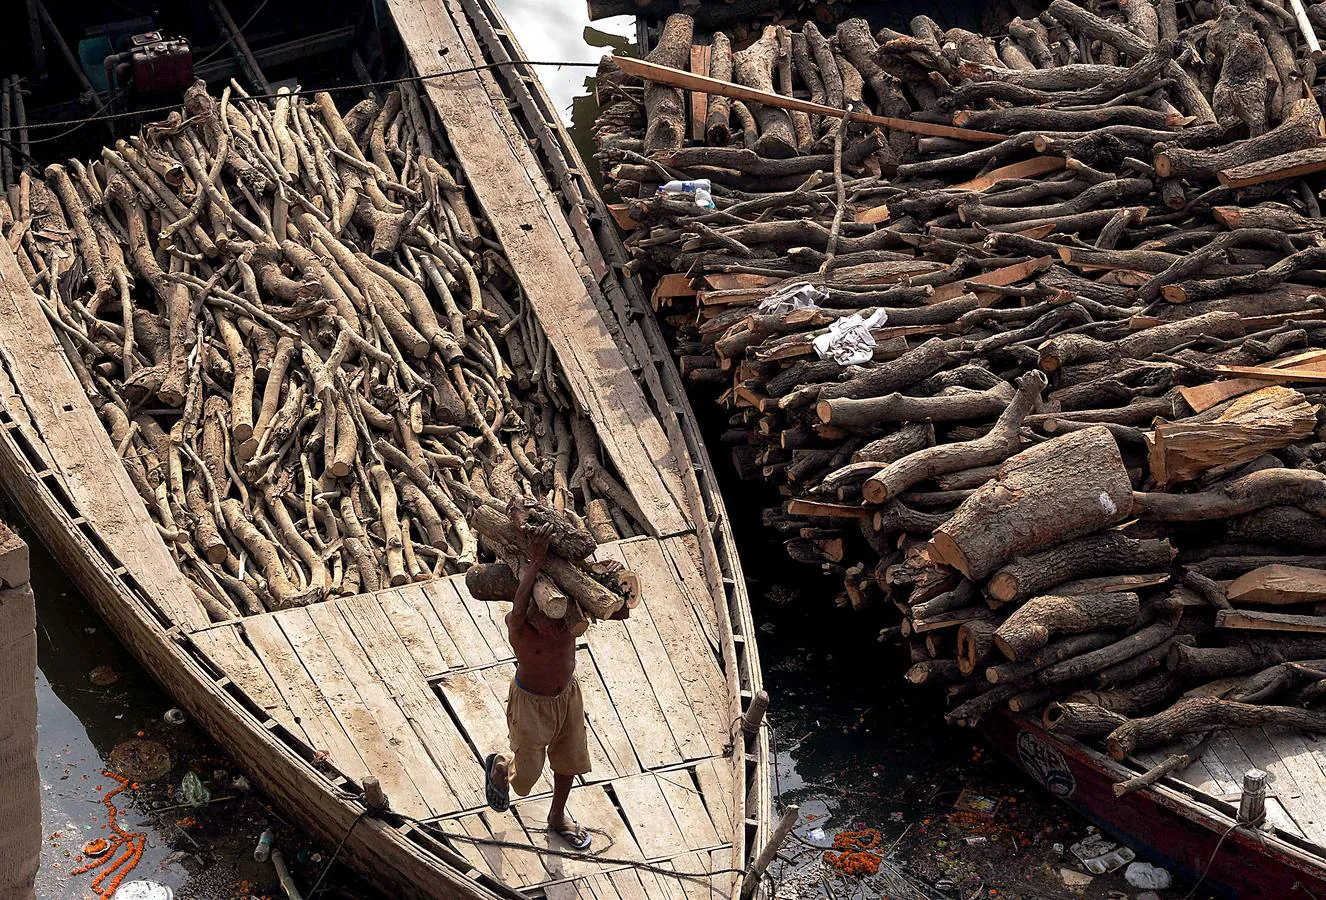 Todo hindú desea ser incinerado en Varanasi, la ciudad sagrada en el norte de la India. En sus ghats, a orillas del Ganges (en las fotografías vemos el ghat de Manikarnika), las piras funerarias son constantes y numerosos barcos cargados de madera la depositan con frecuencia. Cada una de las alrededor de 200 cremaciones que se realizan a diario necesita entre 200 y 400 kilos de madera, lo que significa que son consumidas hasta 80 toneladas. Un problema más para la polución en el país.